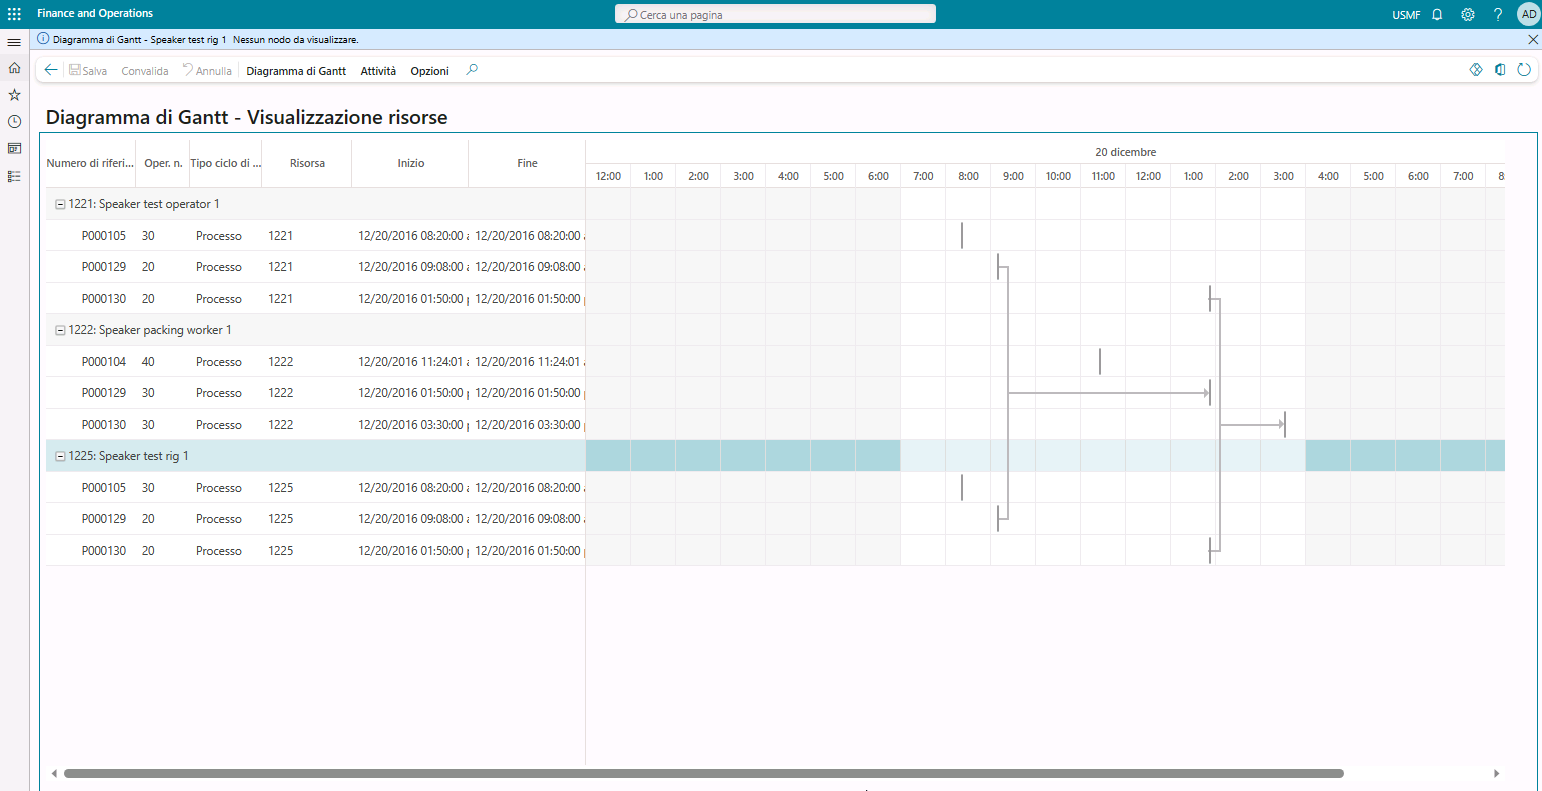 Screenshot della pagina Diagramma di Gantt - Visualizzazione risorse che include diverse programmazioni di produzione.